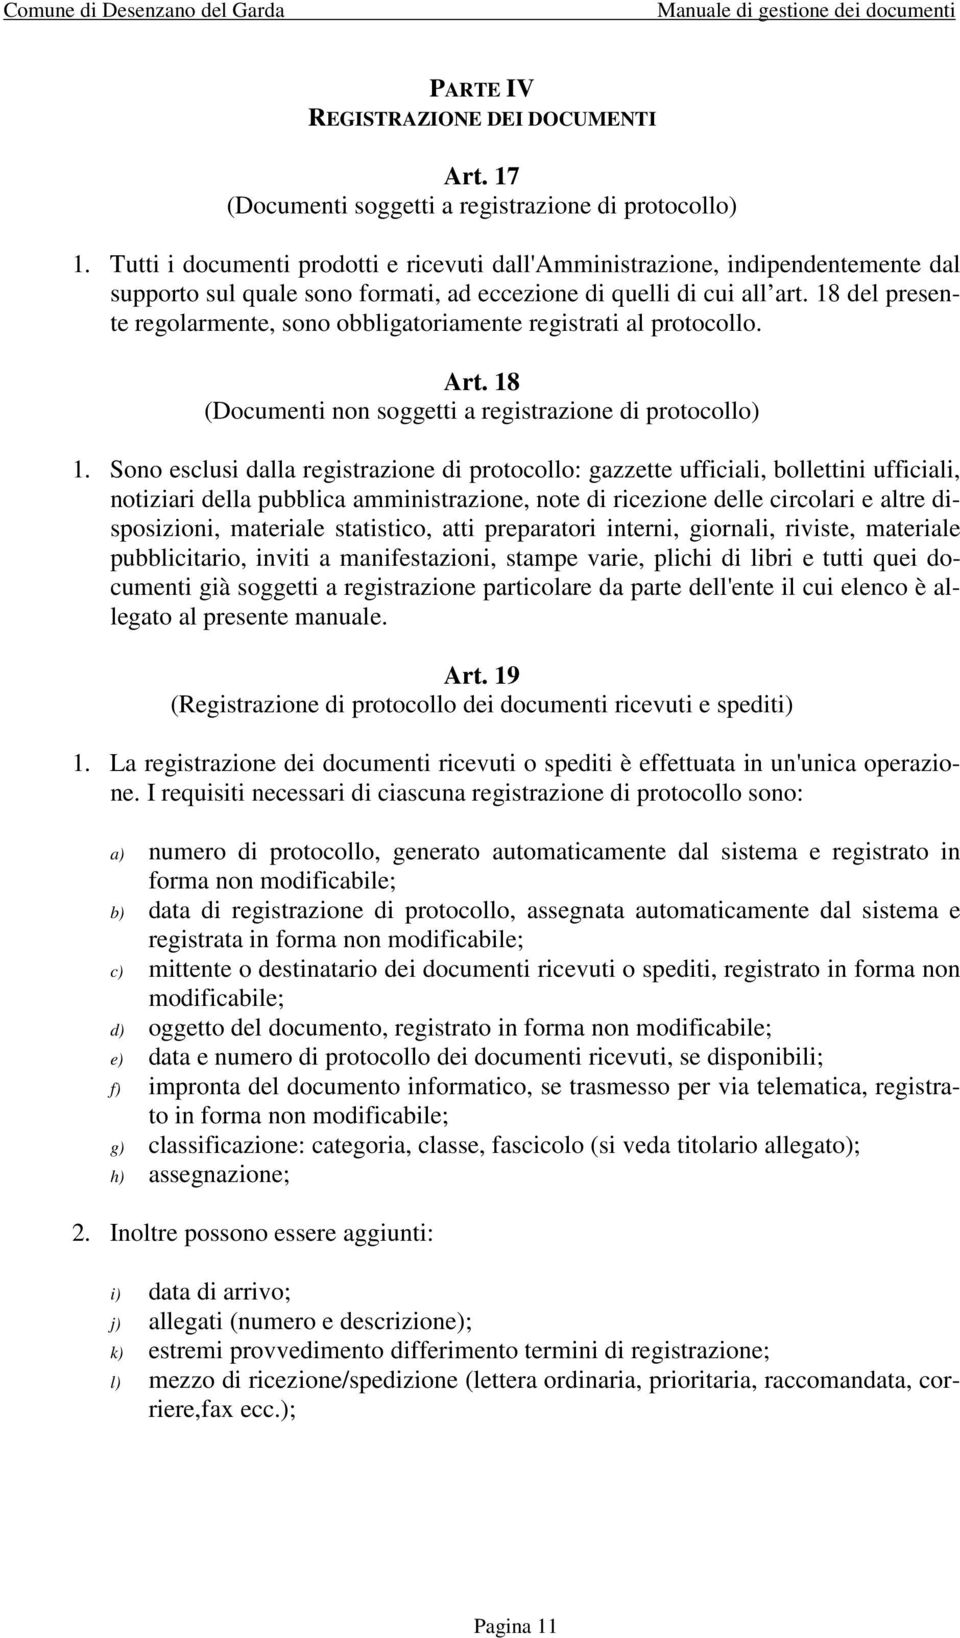 18 del presente regolarmente, sono obbligatoriamente registrati al protocollo. Art. 18 (Documenti non soggetti a registrazione di protocollo) 1.